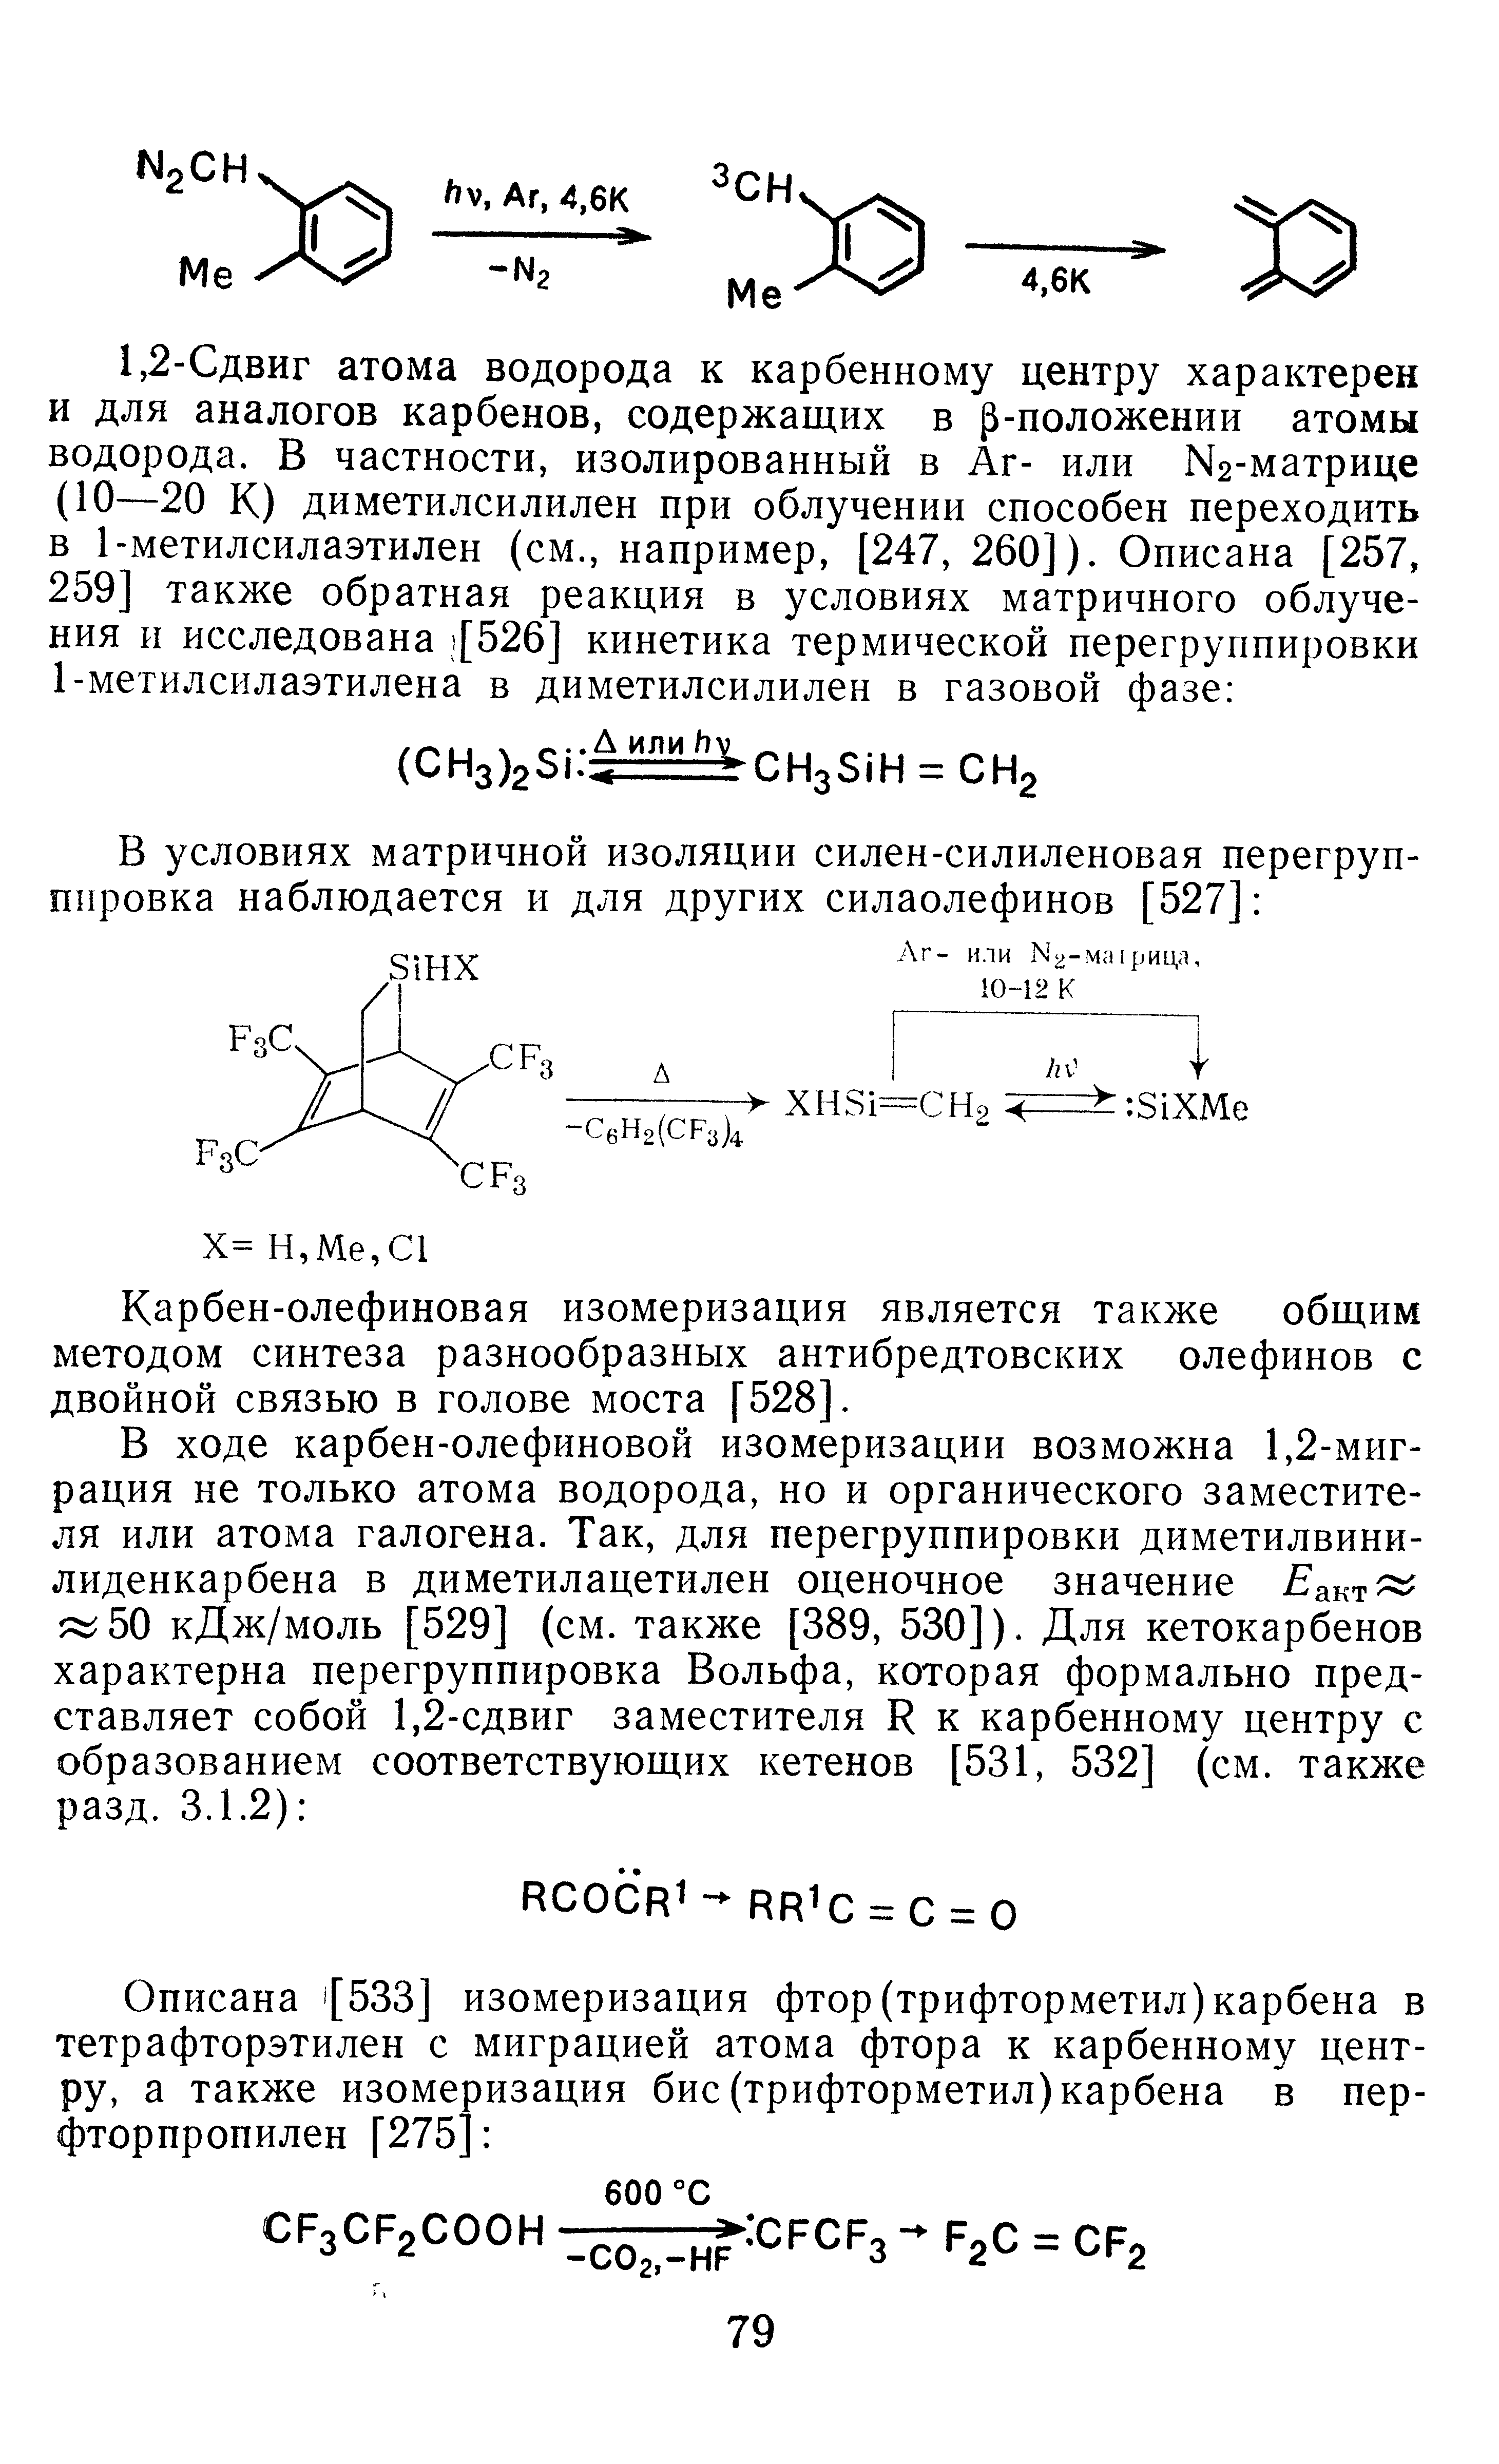 Карбен-олефиновая изомеризация является также общим методом синтеза разнообразных антибредтовских олефинов с двойной связью в голове моста [528].